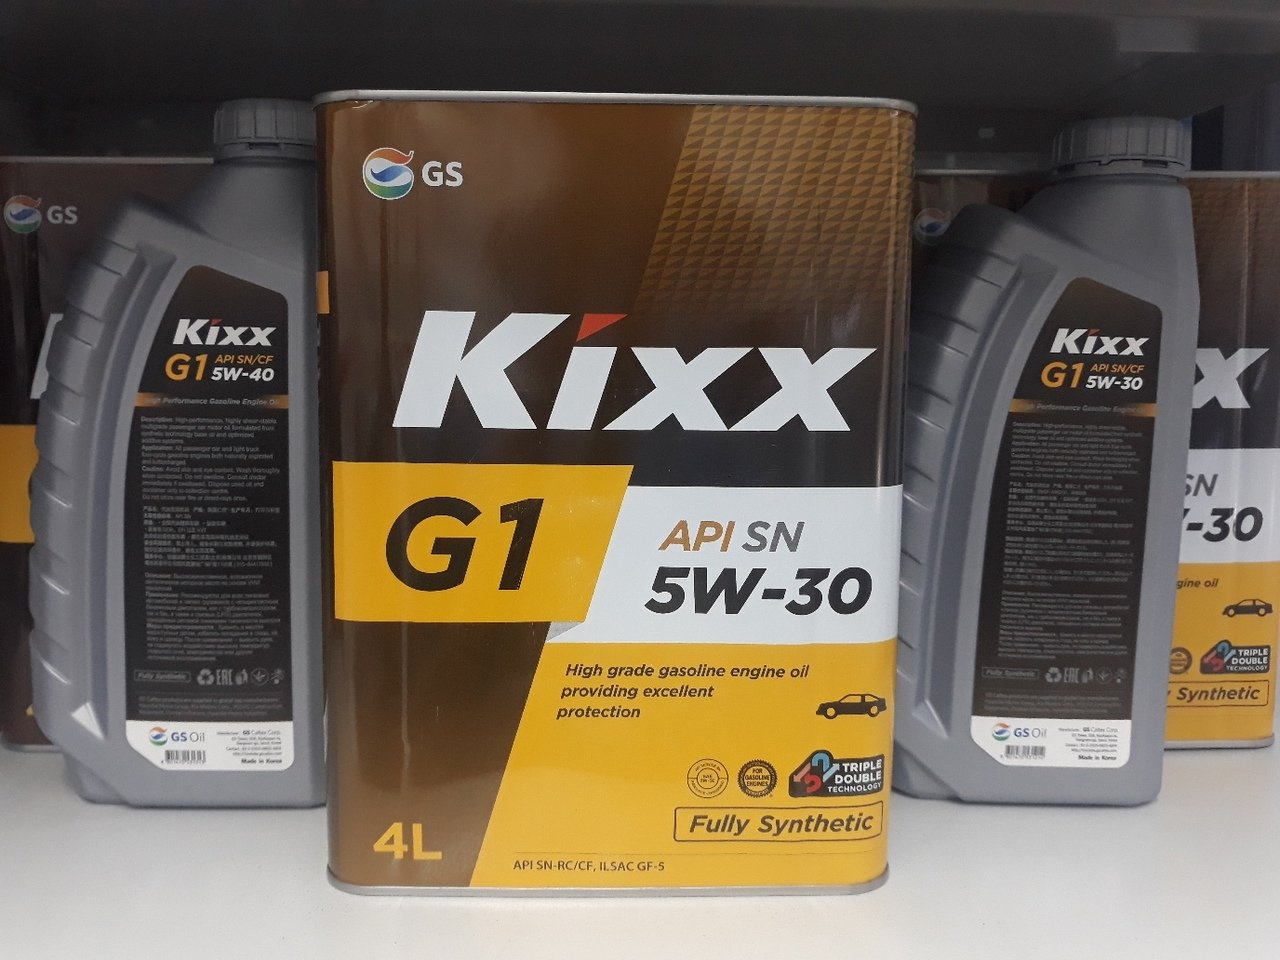 Масло ilsac gf 5 5w30. Kixx g1 5w-30 a5/b5. Kixx 5w30 a5/b5. Kixx g1 5w-30 API SN/CF ILSAC gf. Масло Kixx g1 5w30 API SP.